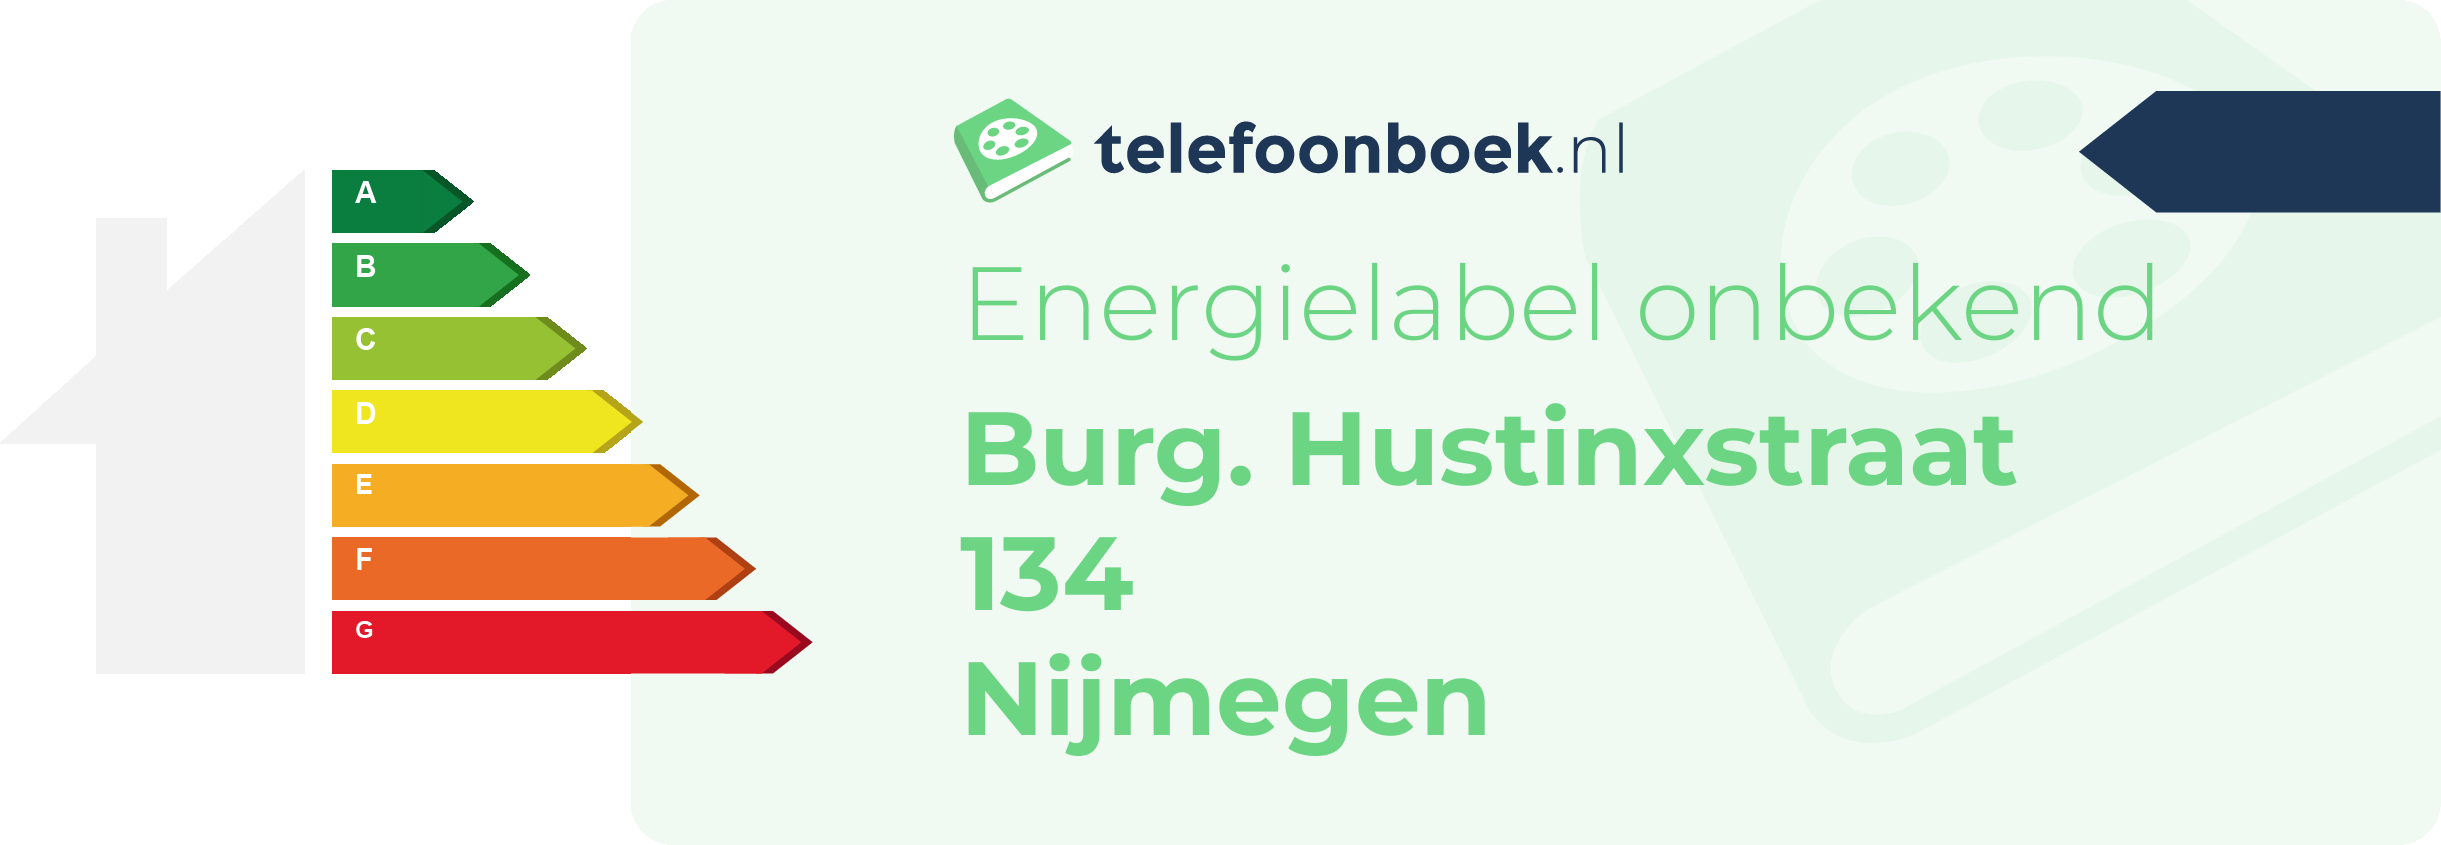 Energielabel Burg. Hustinxstraat 134 Nijmegen